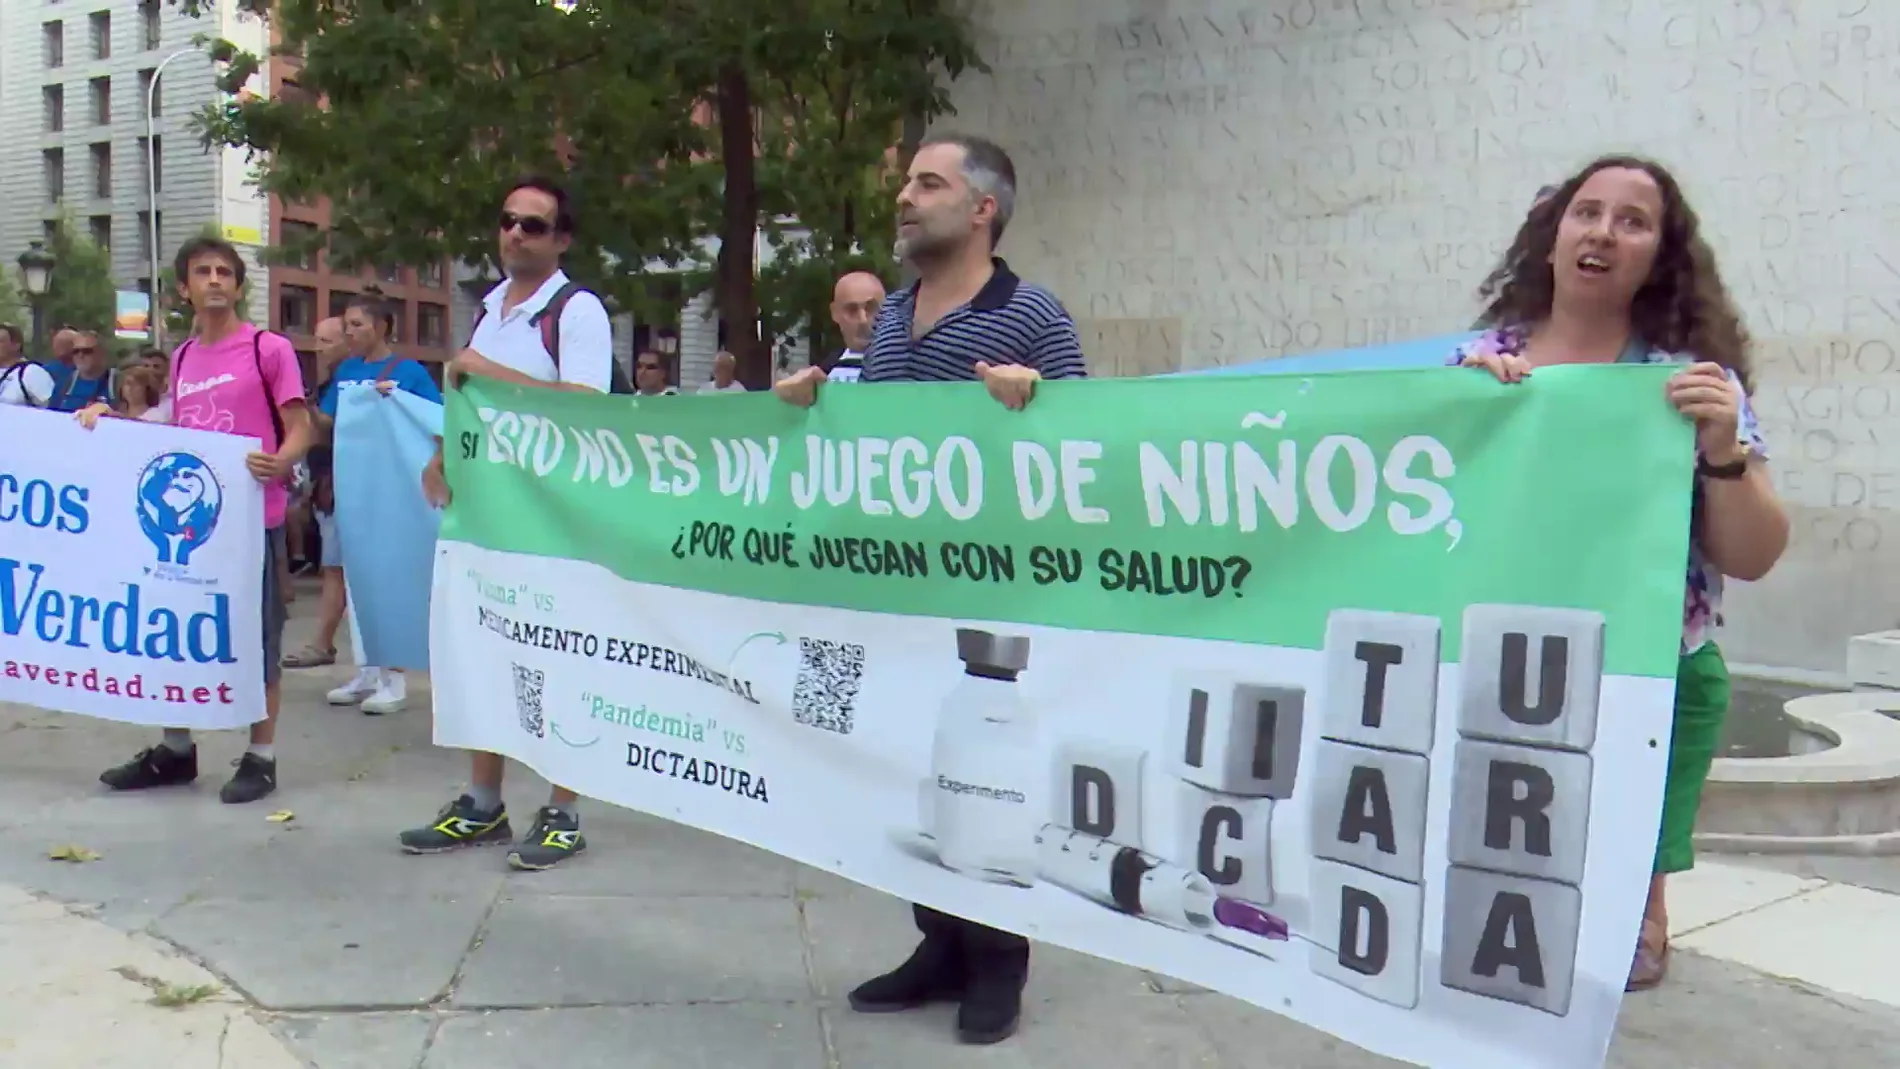 Las razones de los negacionistas en la manifestación de Madrid: "Las modifican el ADN y causan esterilidad"